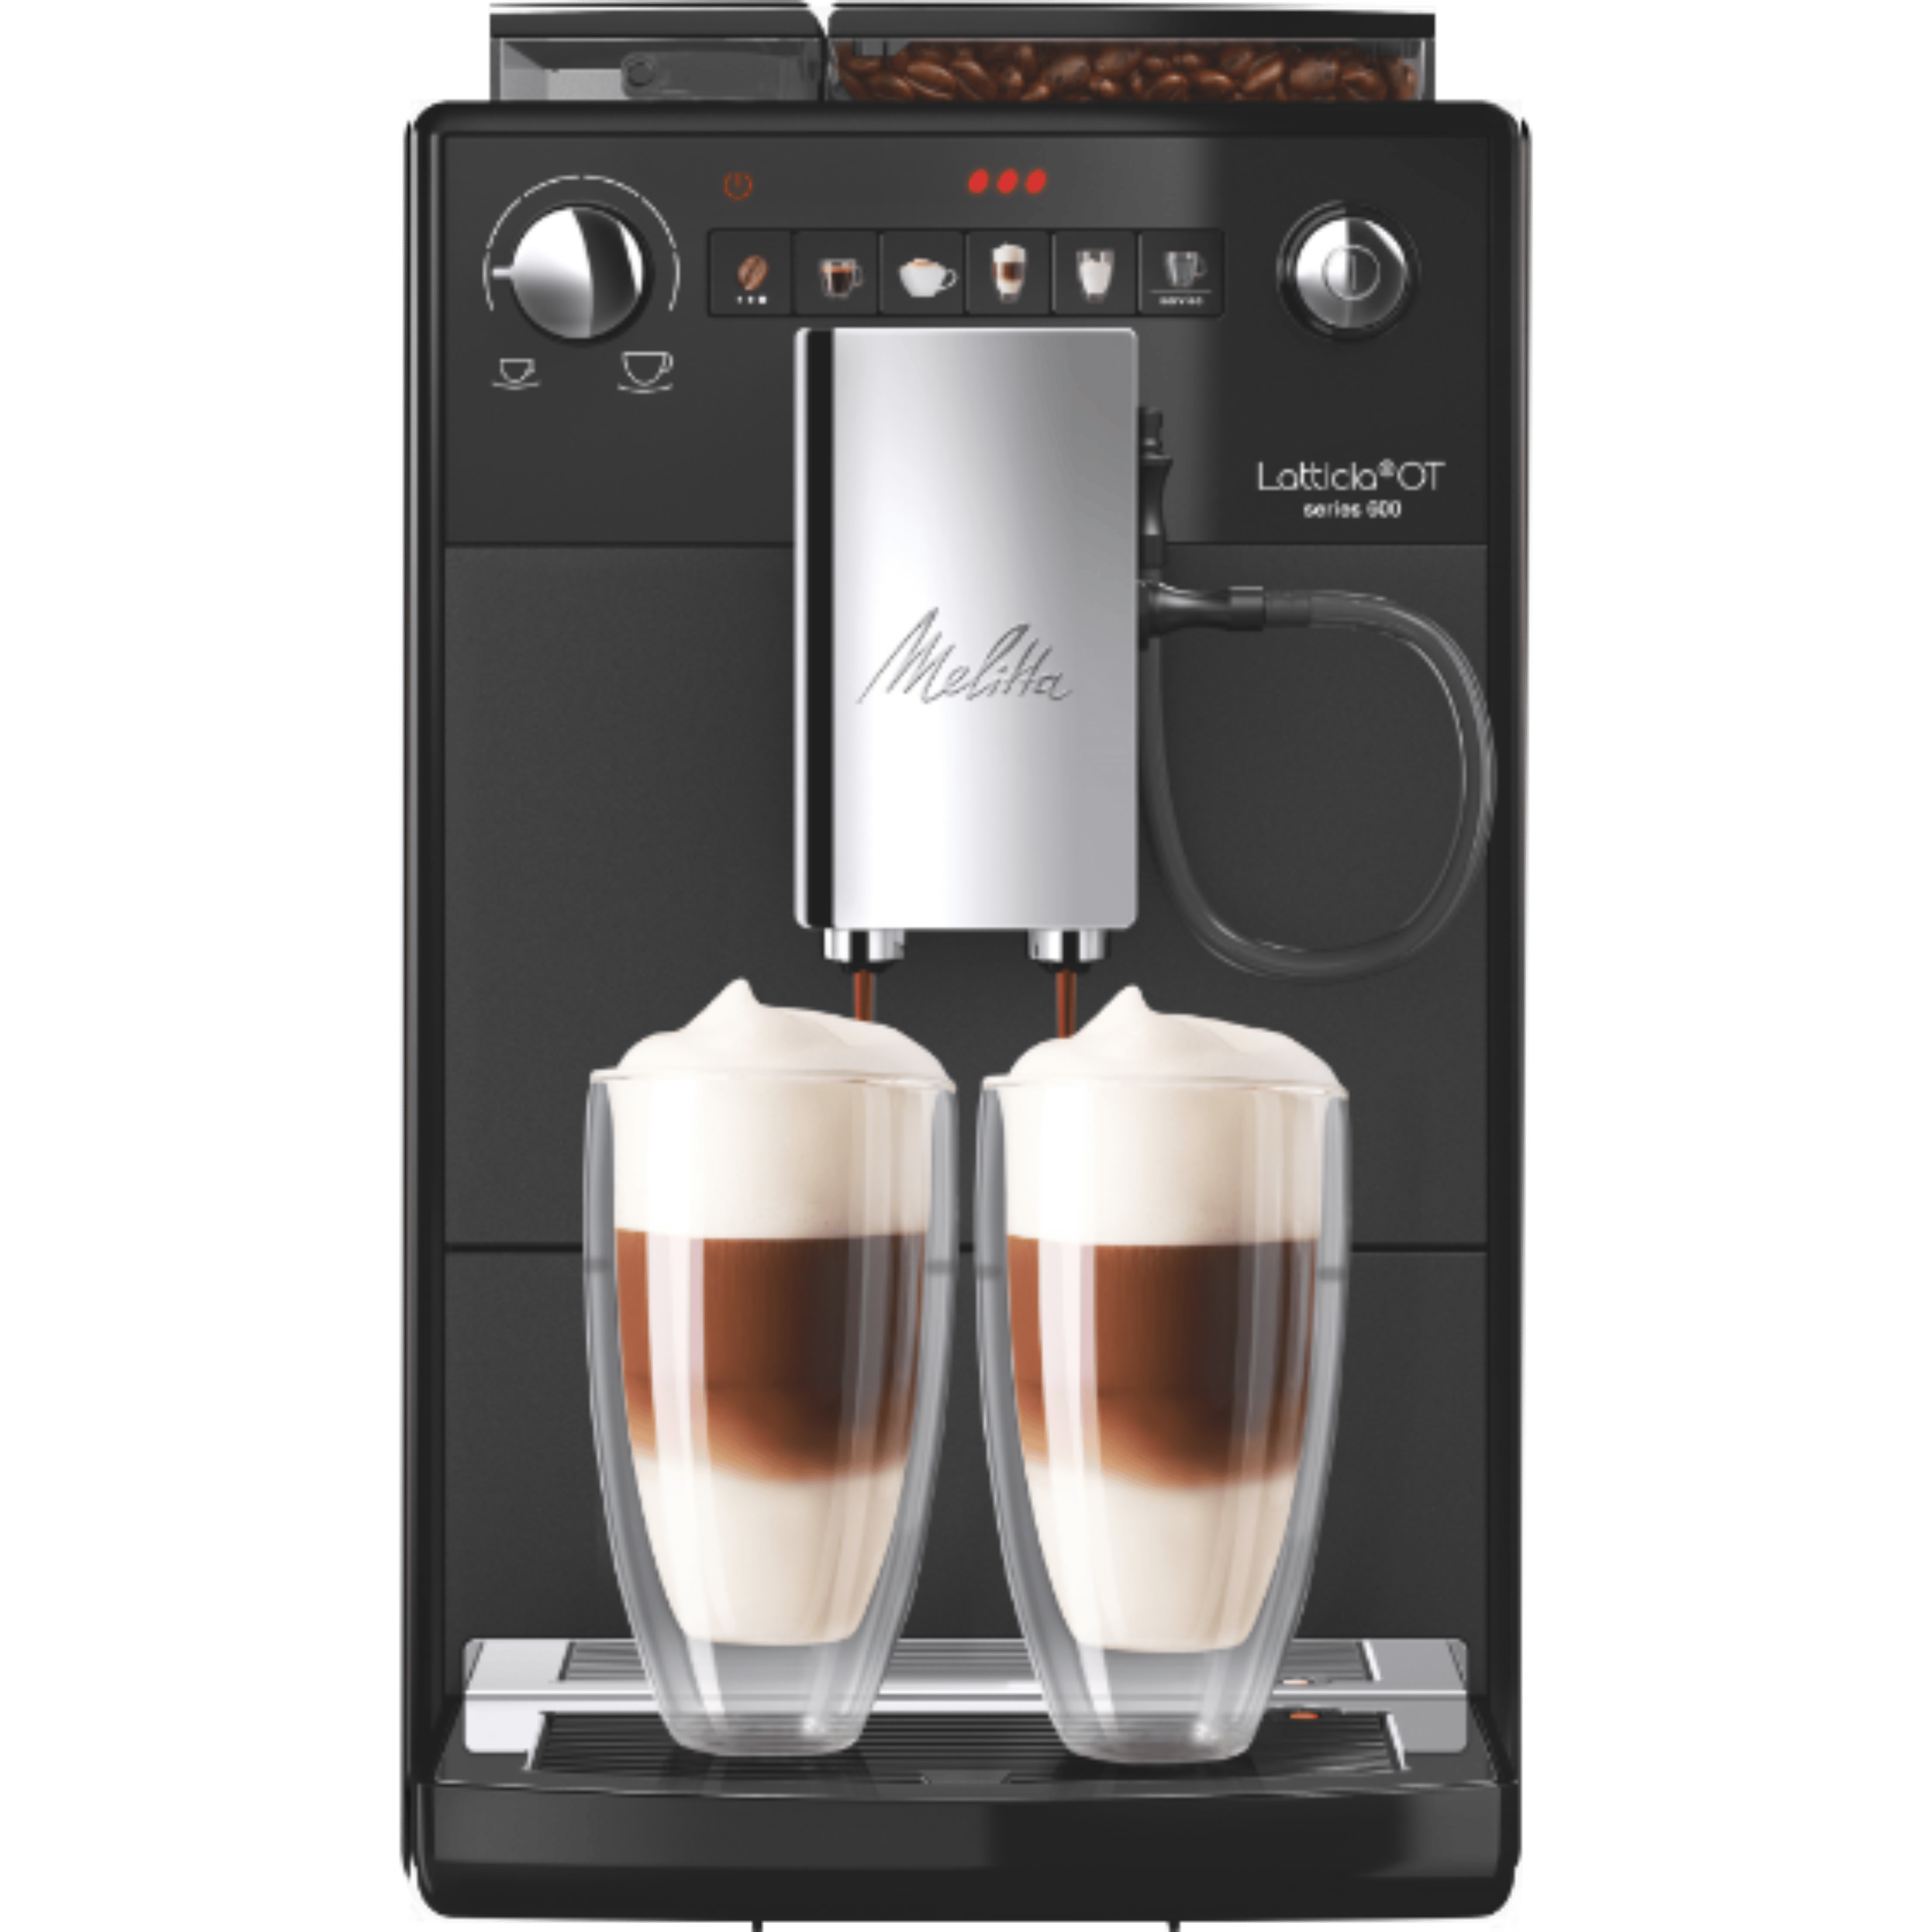 מכונת קפה אוטומטית למגוון משקאות בלחיצת כפתור Melitta Latticia - שחור שנה אחריות ע